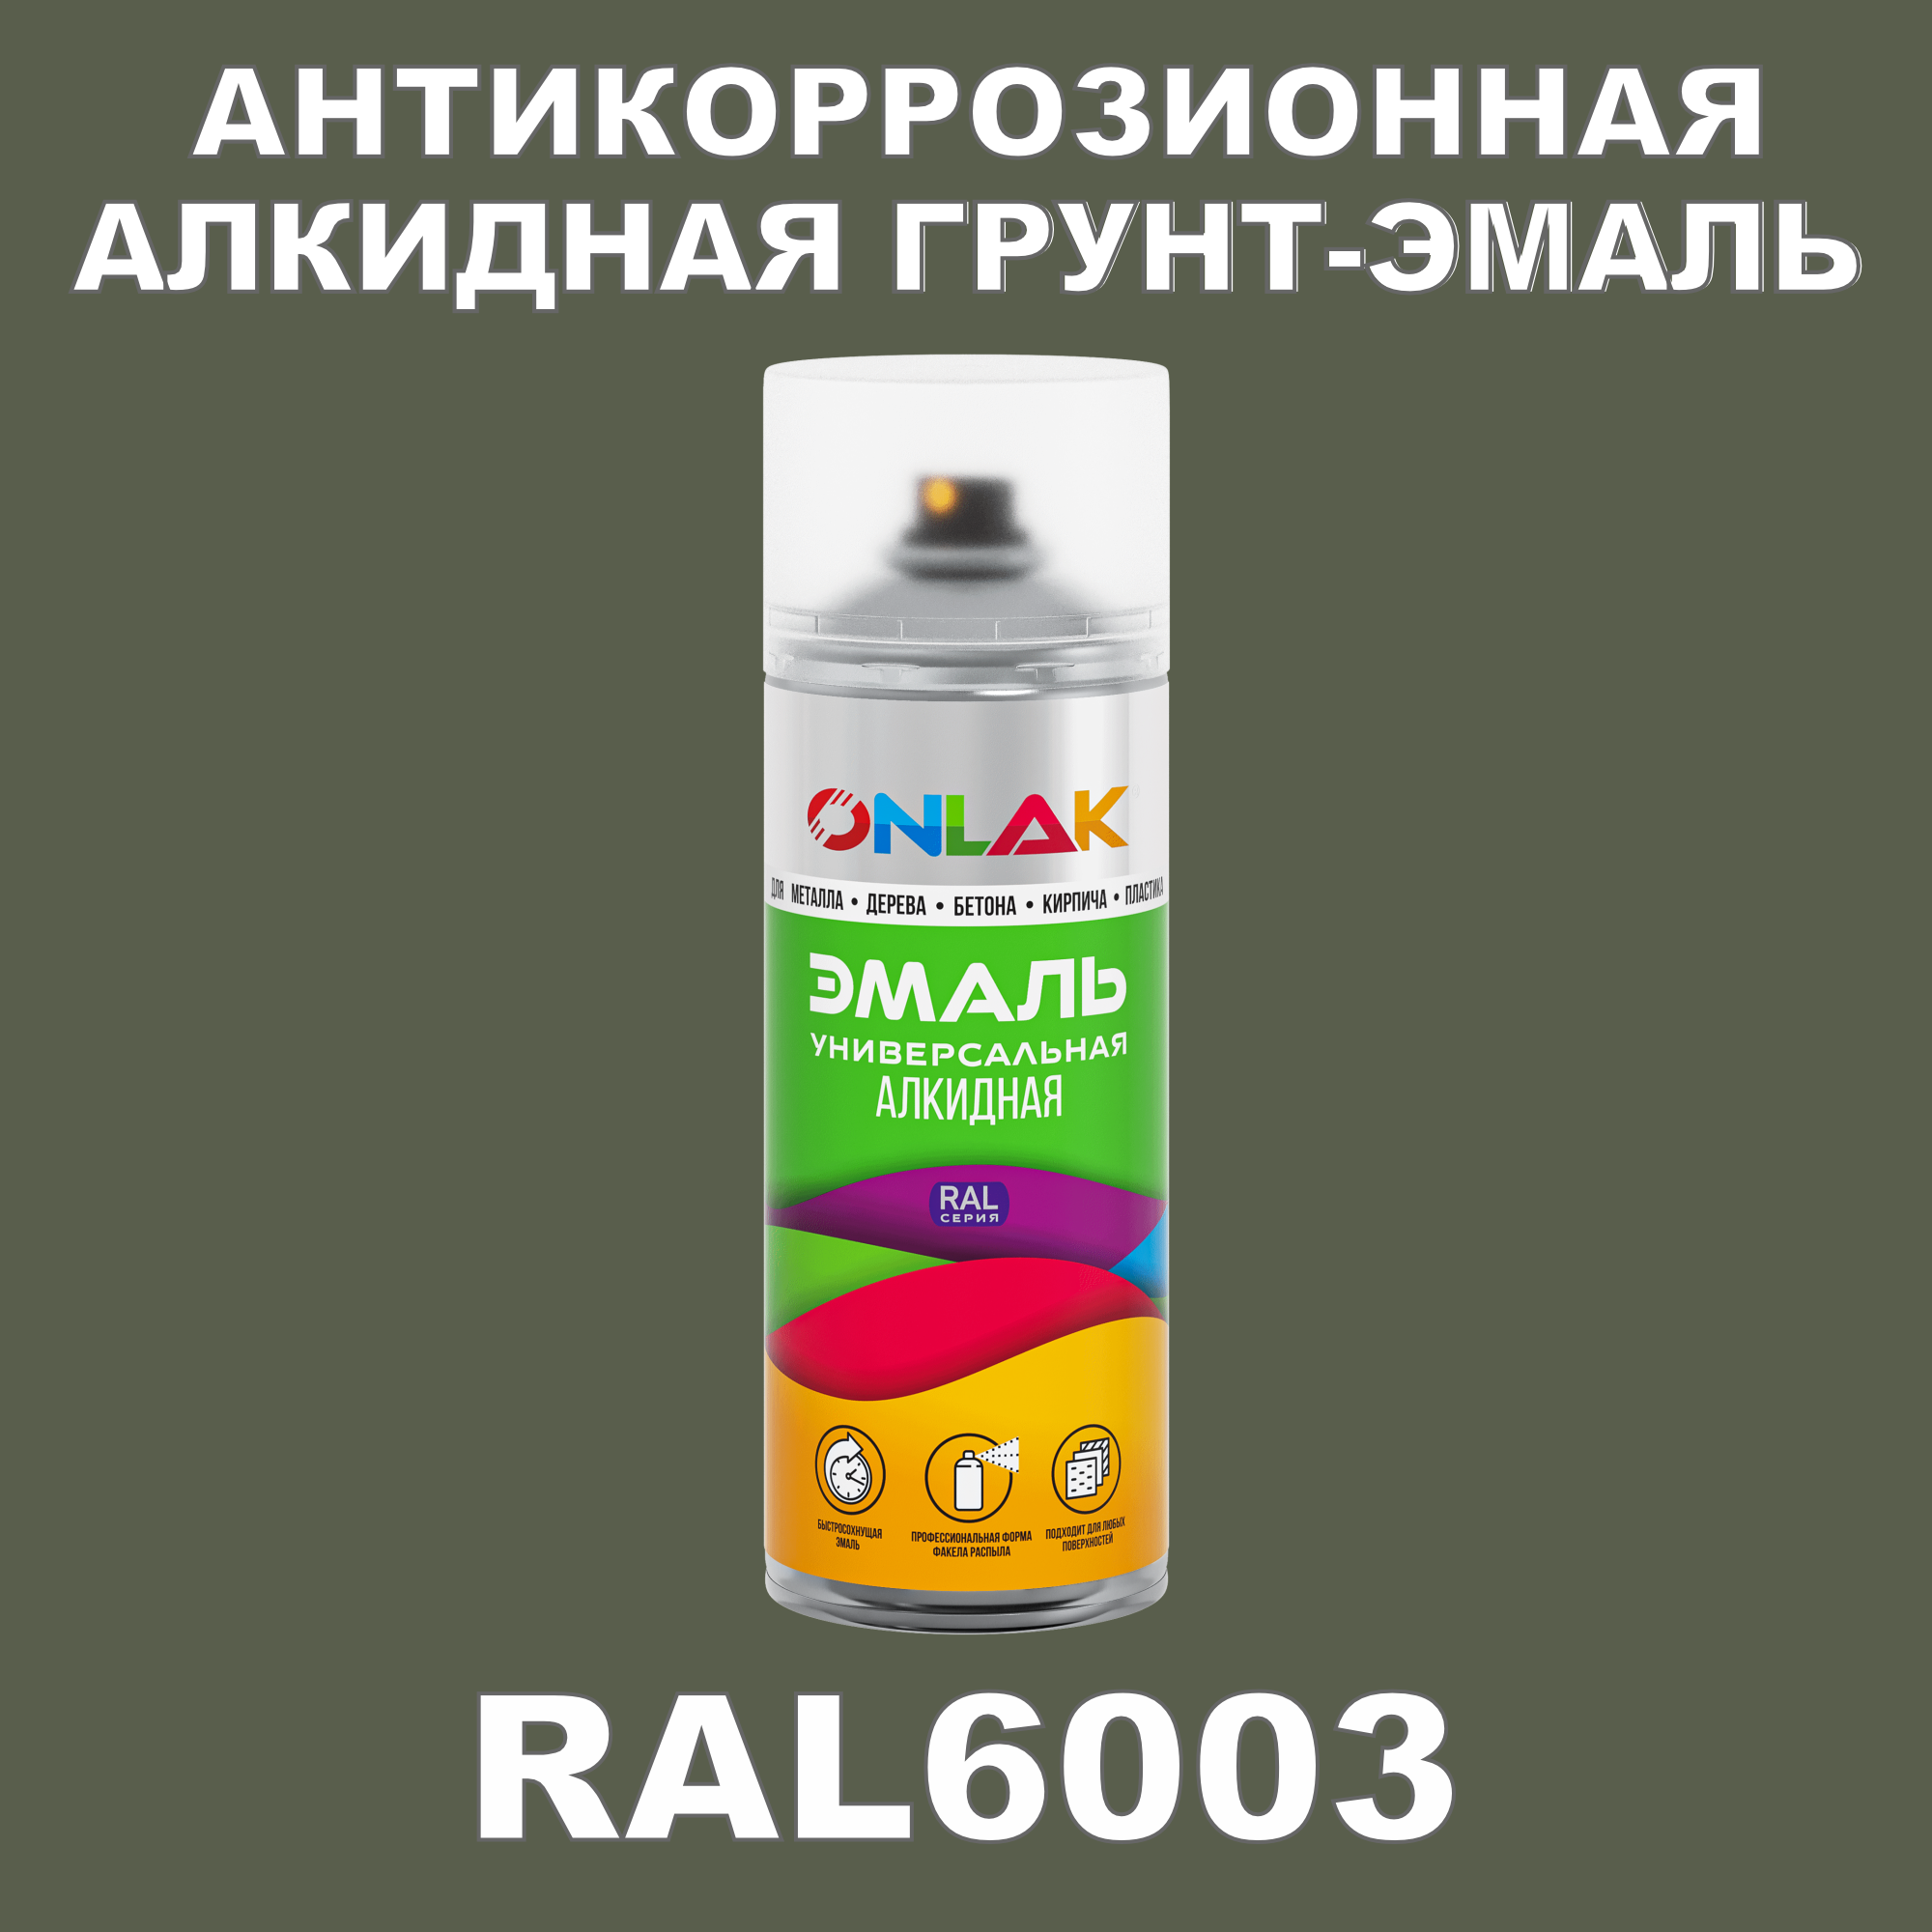 Антикоррозионная грунт-эмаль ONLAK RAL6003 полуматовая для металла и защиты от ржавчины грунт эмаль по ржавчине экодом 3 в 1 полуматовая 10 кг черная